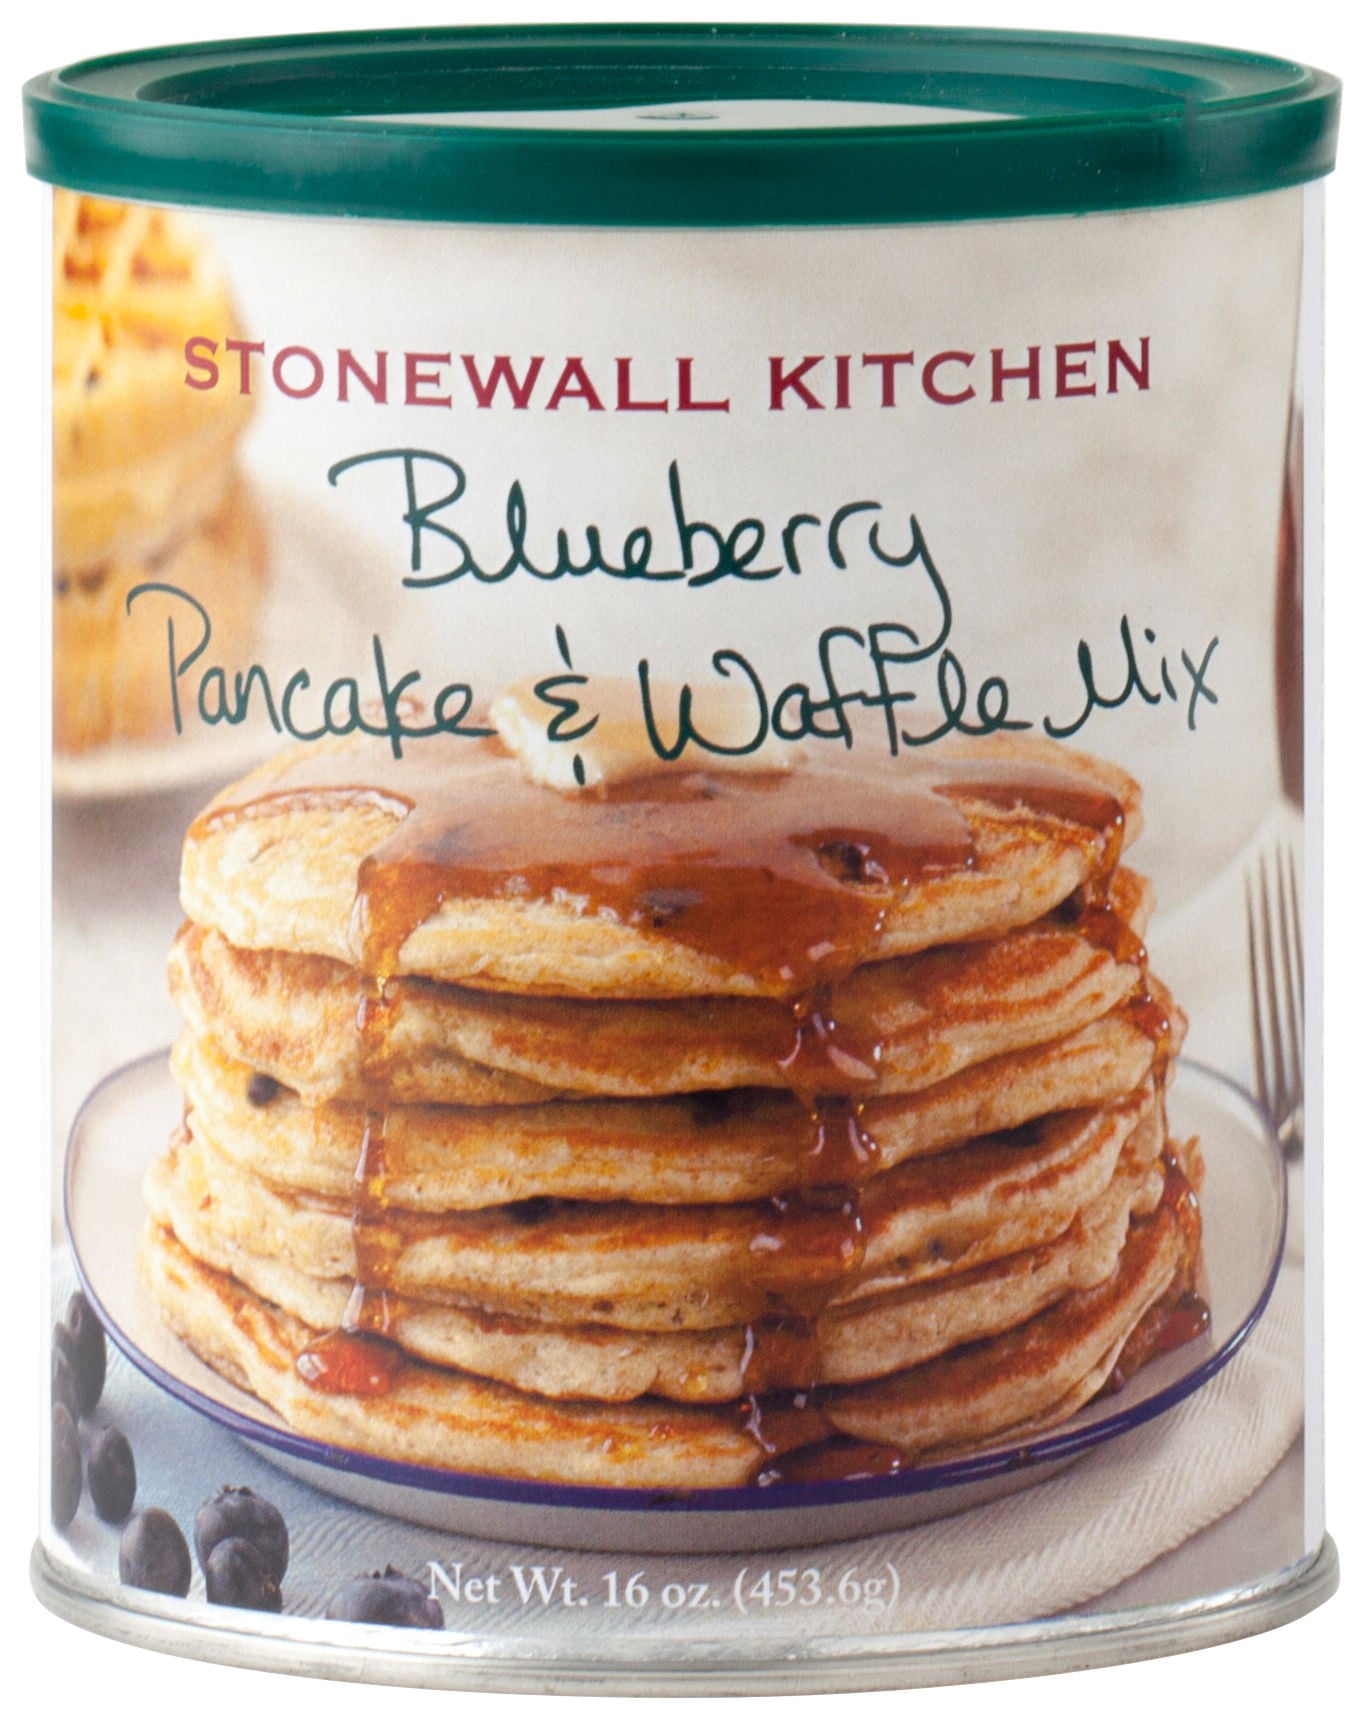 Stonewall Kitchen Blueberry Pancake & Waffle Mix One Size ...